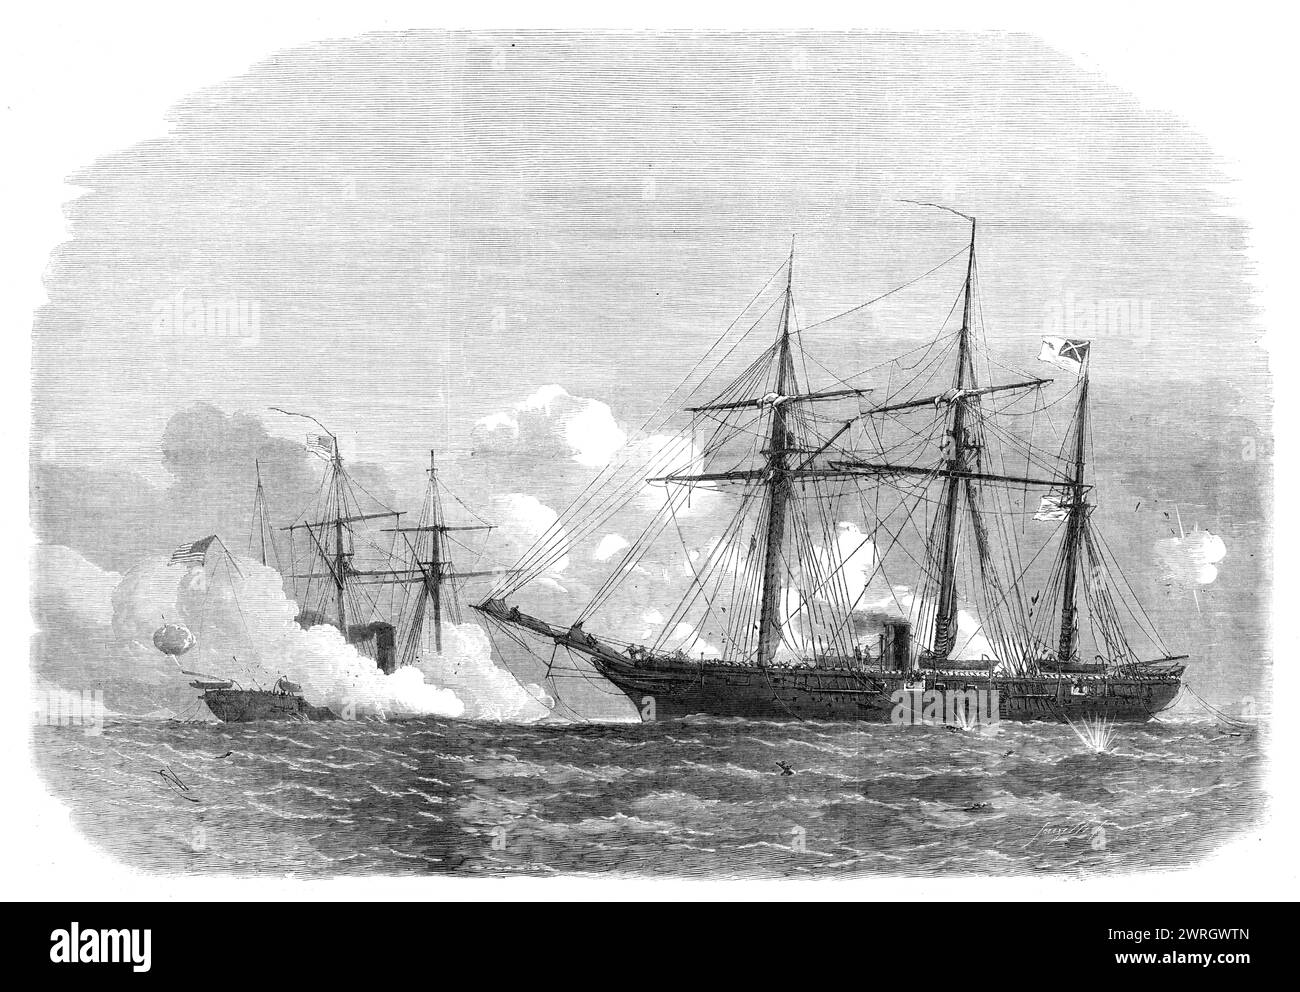 Der Kampf zwischen den Alabama und den Kearsarge, 1864. Amerikanischer Bürgerkrieg - Seeschlacht vor Cherbourg am 19. Juni, nach einer Skizze von Robert Lancaster, dem Besitzer der Yacht Deerhound, die während der gesamten Schlacht anwesend war und die glücklicherweise dazu beitrug, das Leben von Kapitän Semmes zu retten, dreizehn Offiziere, und 26 Männer der Alabama (ein konföderiertes Schiff, das ursprünglich Nr. 290 genannt wurde), als sie ins Wasser gesprungen waren, als ihr Schiff unterging. Captain Winslow von der Kearsarge schrieb: "Die Kearsarge... steuerte sofort auf die Alabama, um sie näher zu bringen. Die Stockfoto